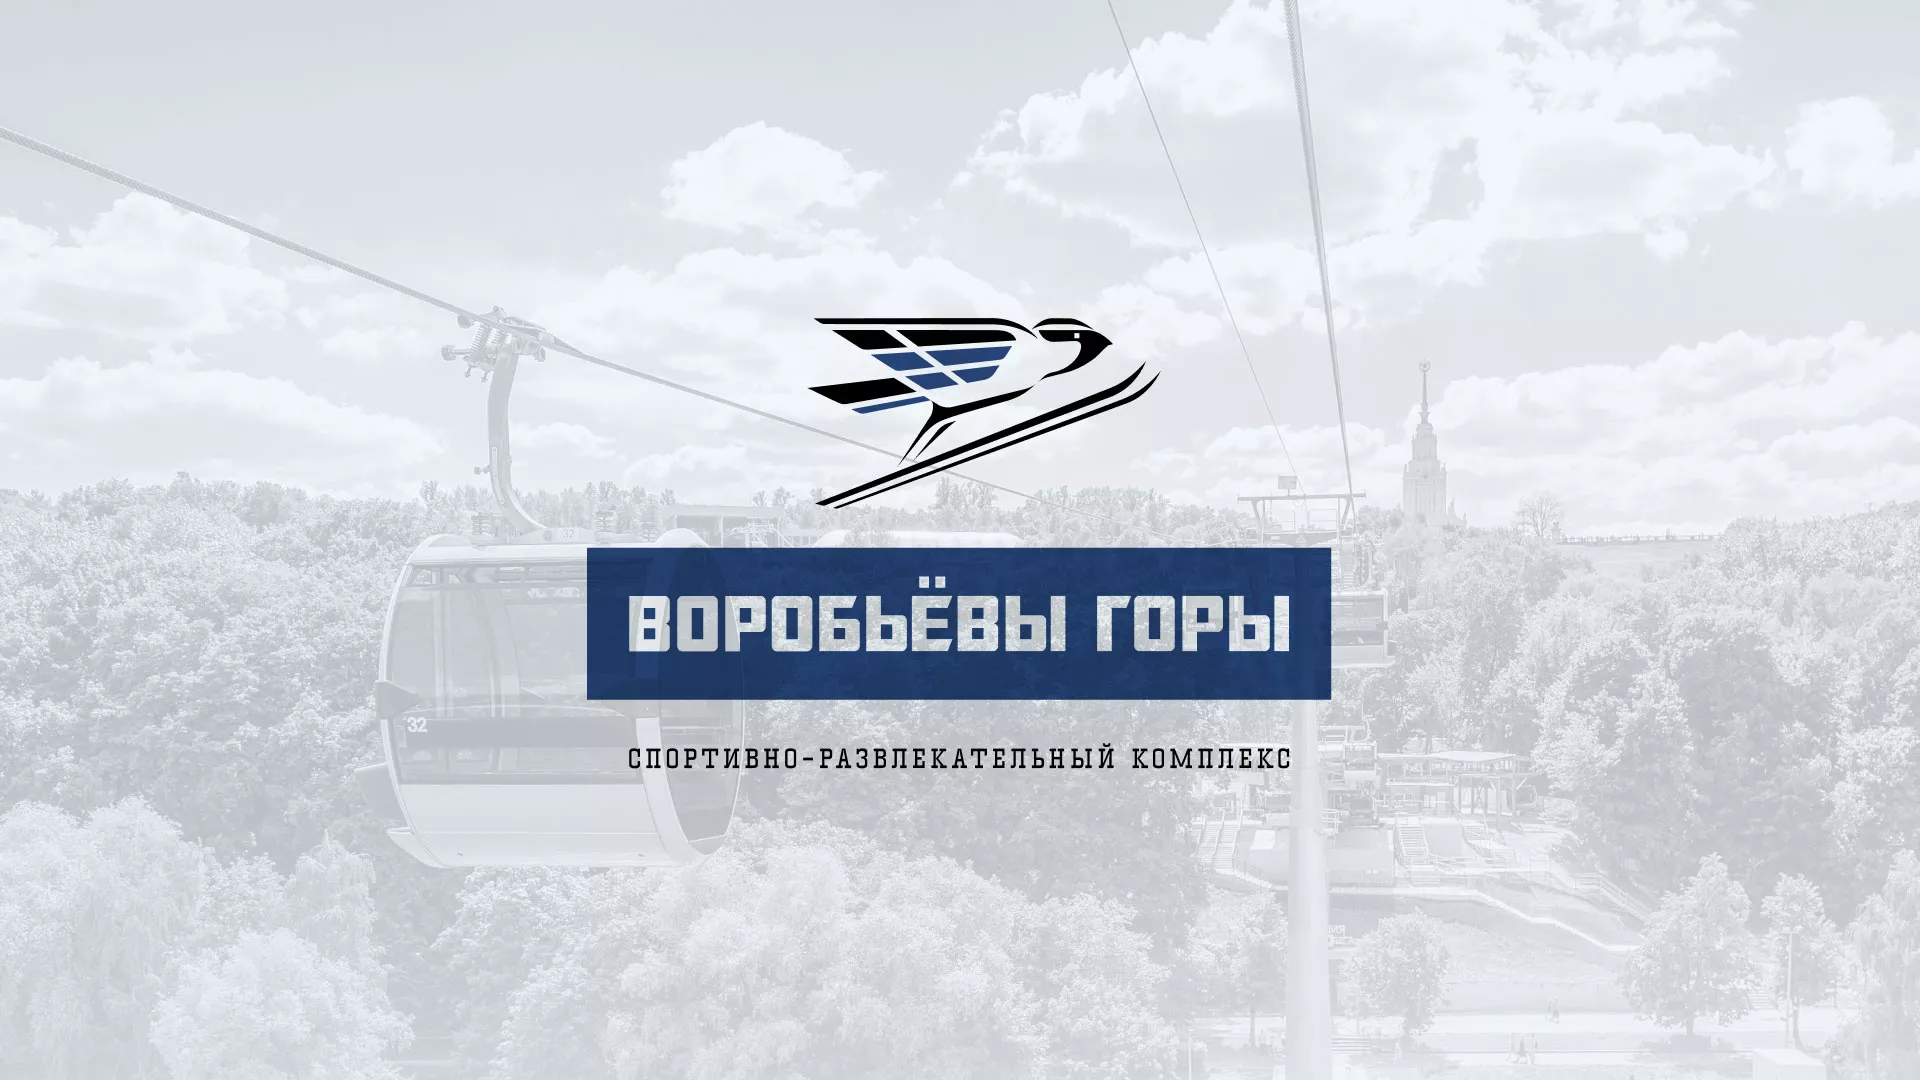 Разработка сайта в Чебаркуле для спортивно-развлекательного комплекса «Воробьёвы горы»